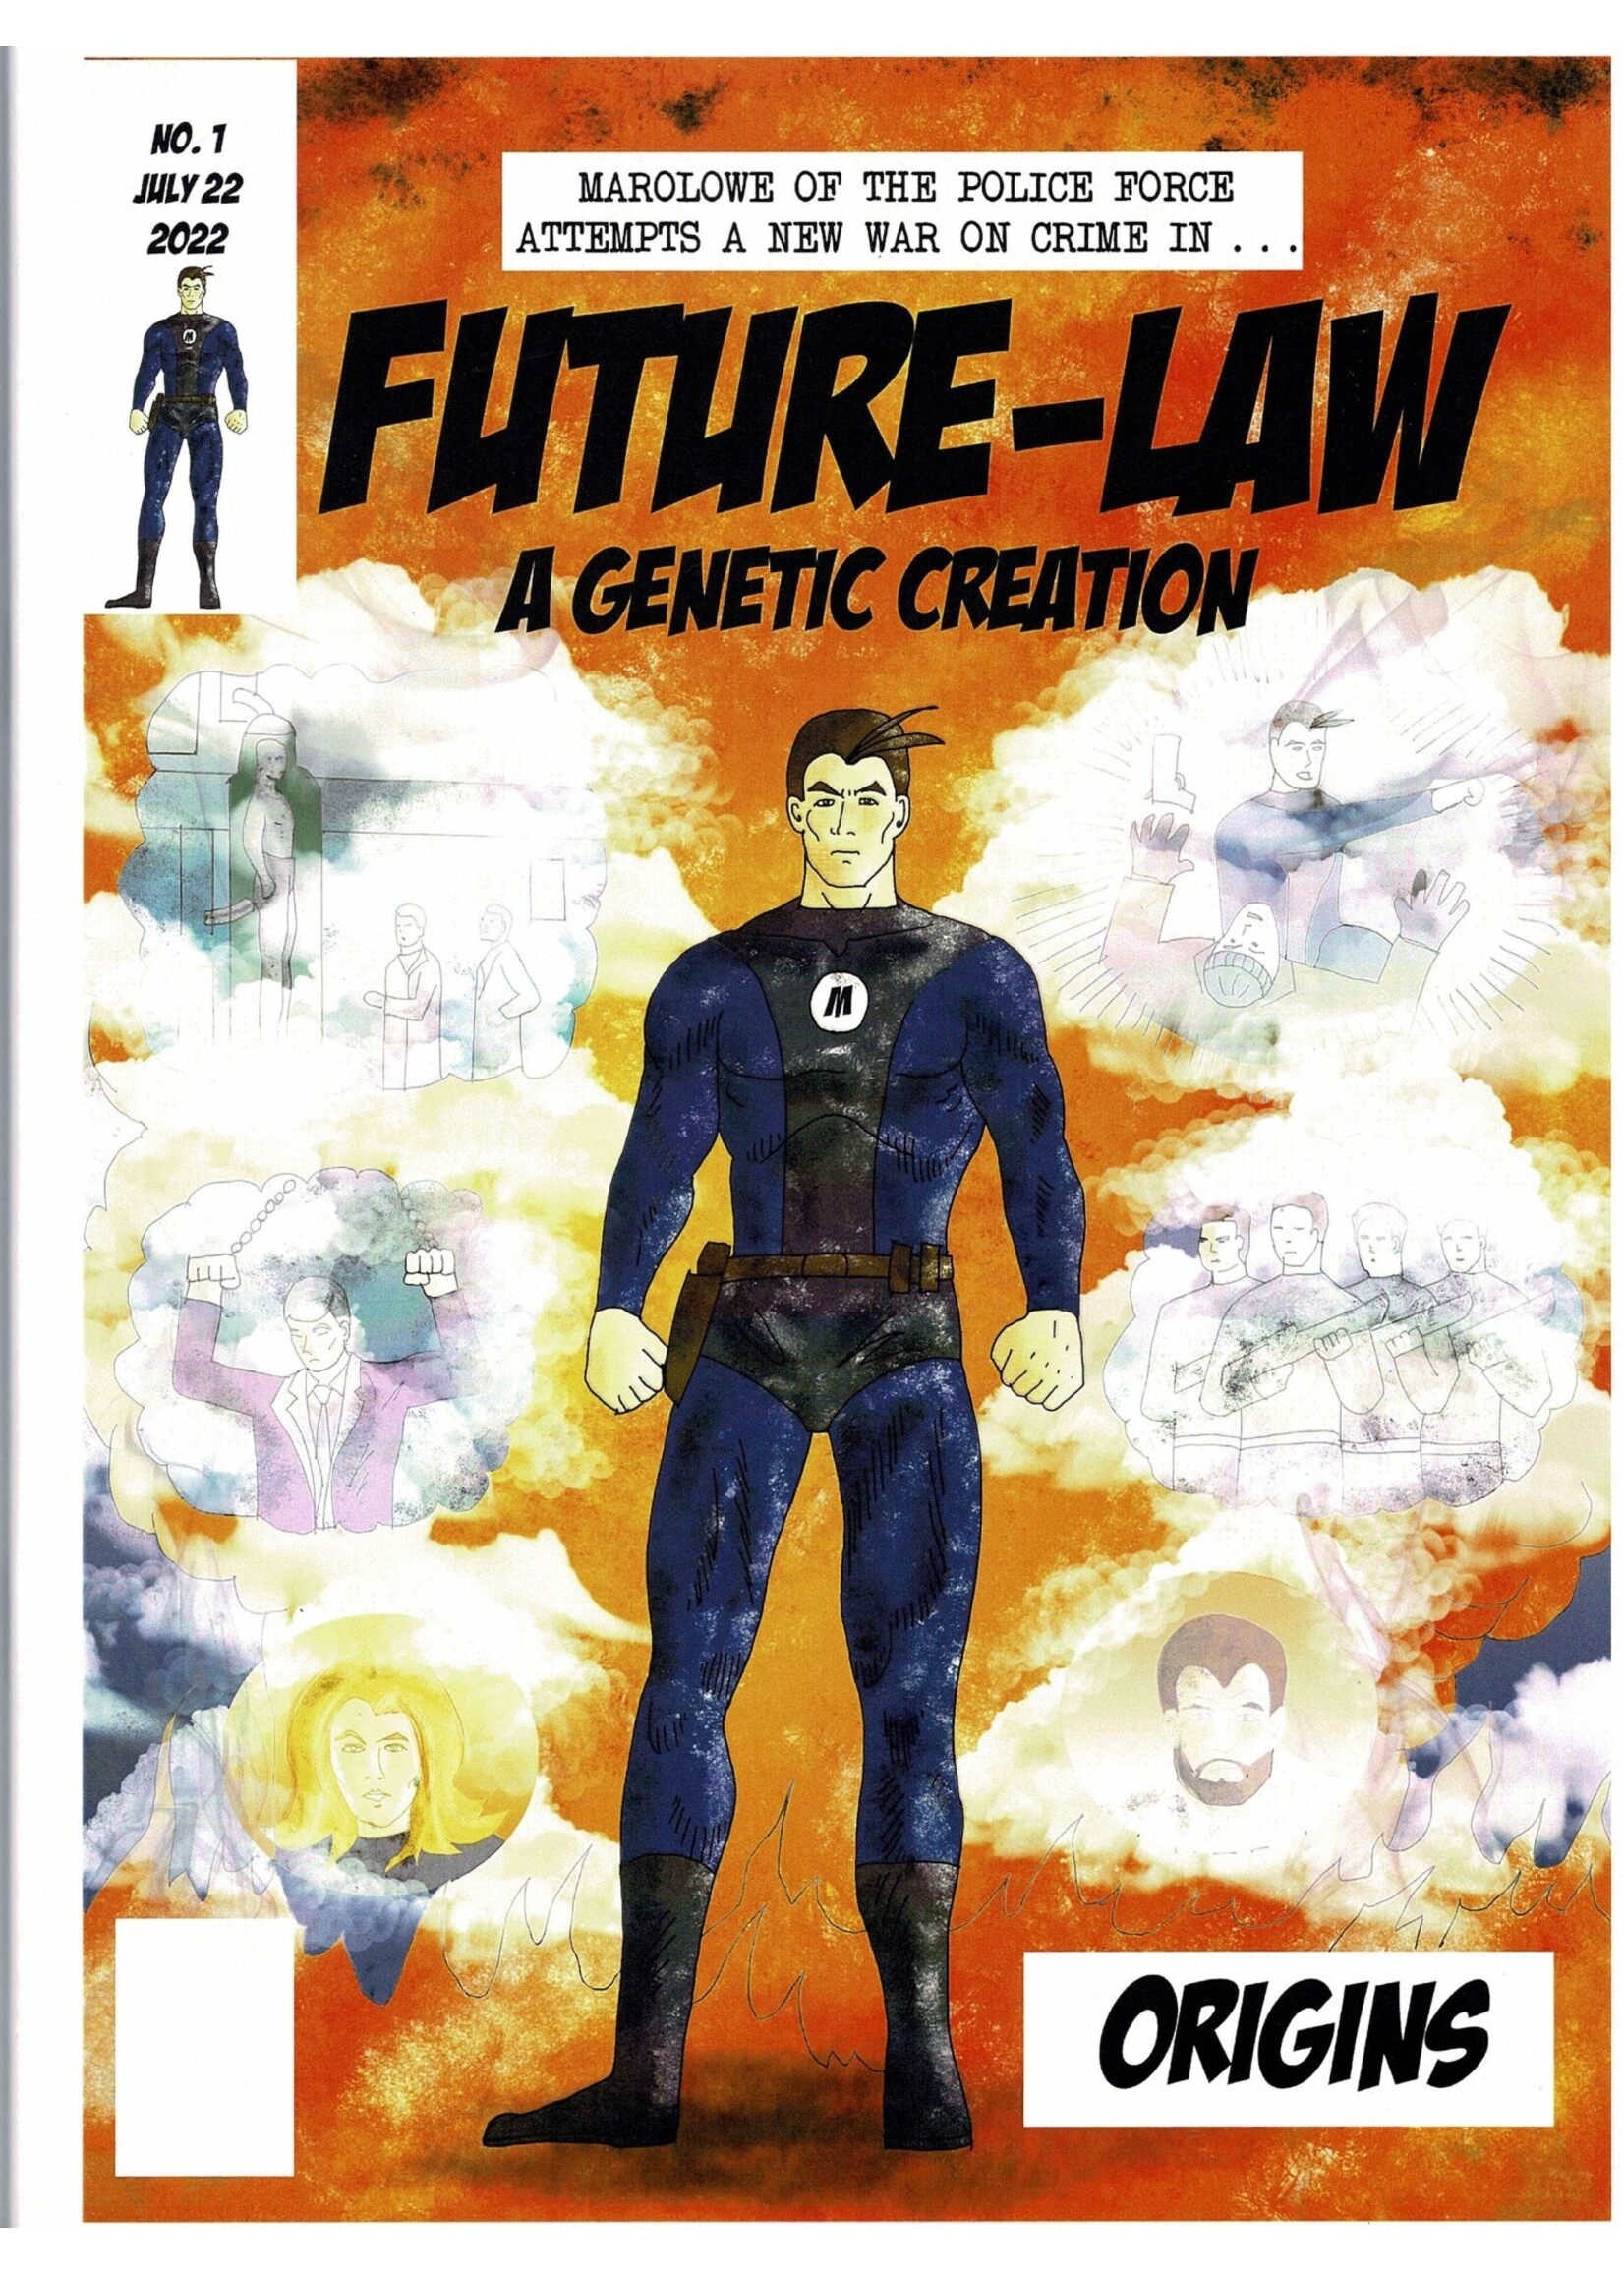 FUTURE LAW #1 & #2